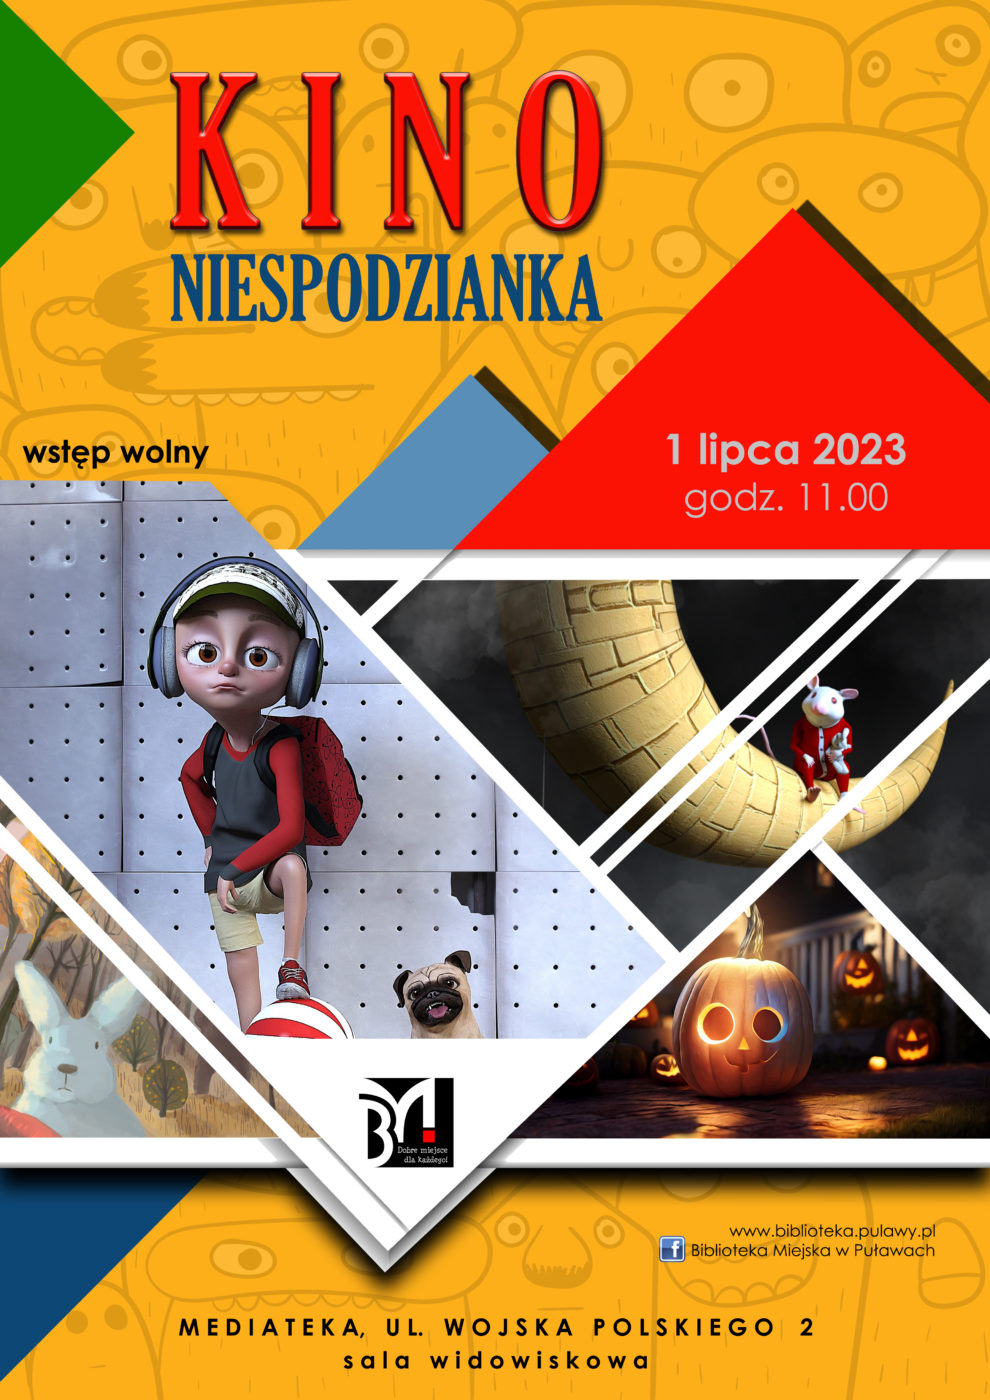 Plakat informujący o seansie filmowym dla dzieci w ramach cyklu Kino Niespodzianka. Termin: 1 lipca 2023, godz. 11.00, Mediateka, ul. Wojska Polskiego 2.